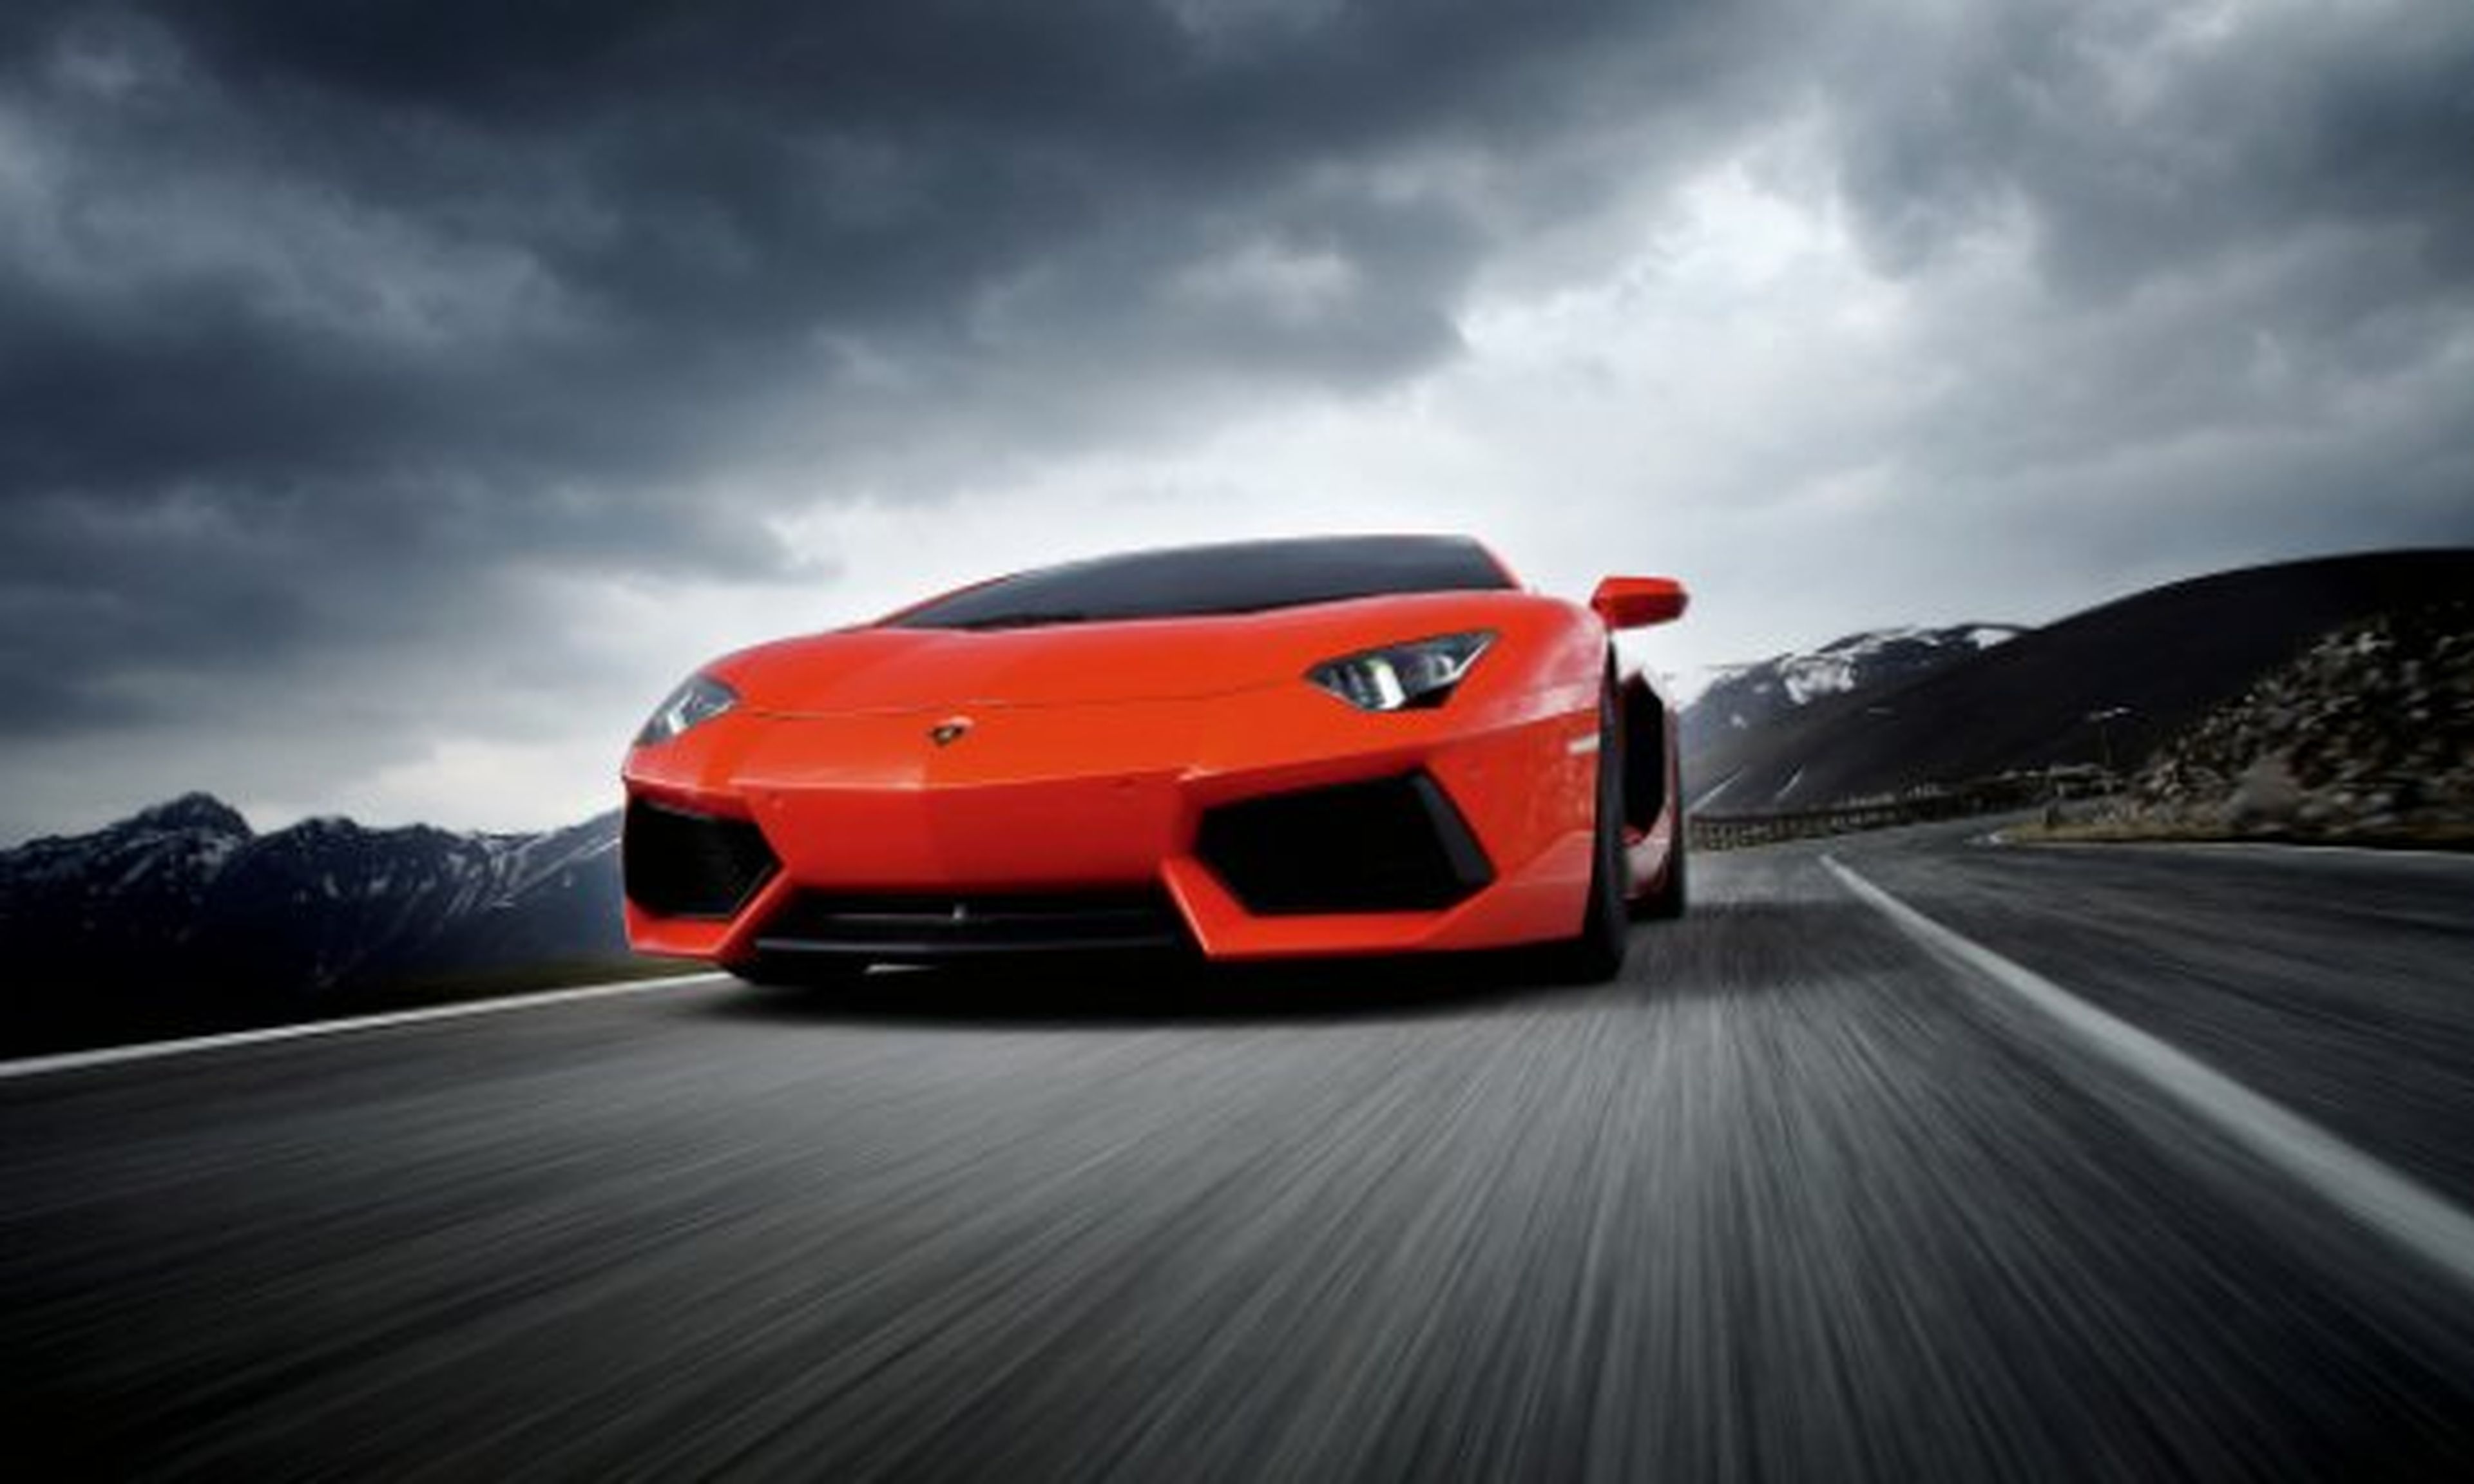 Lamborghini descarta la tecnología híbrida enchufable para